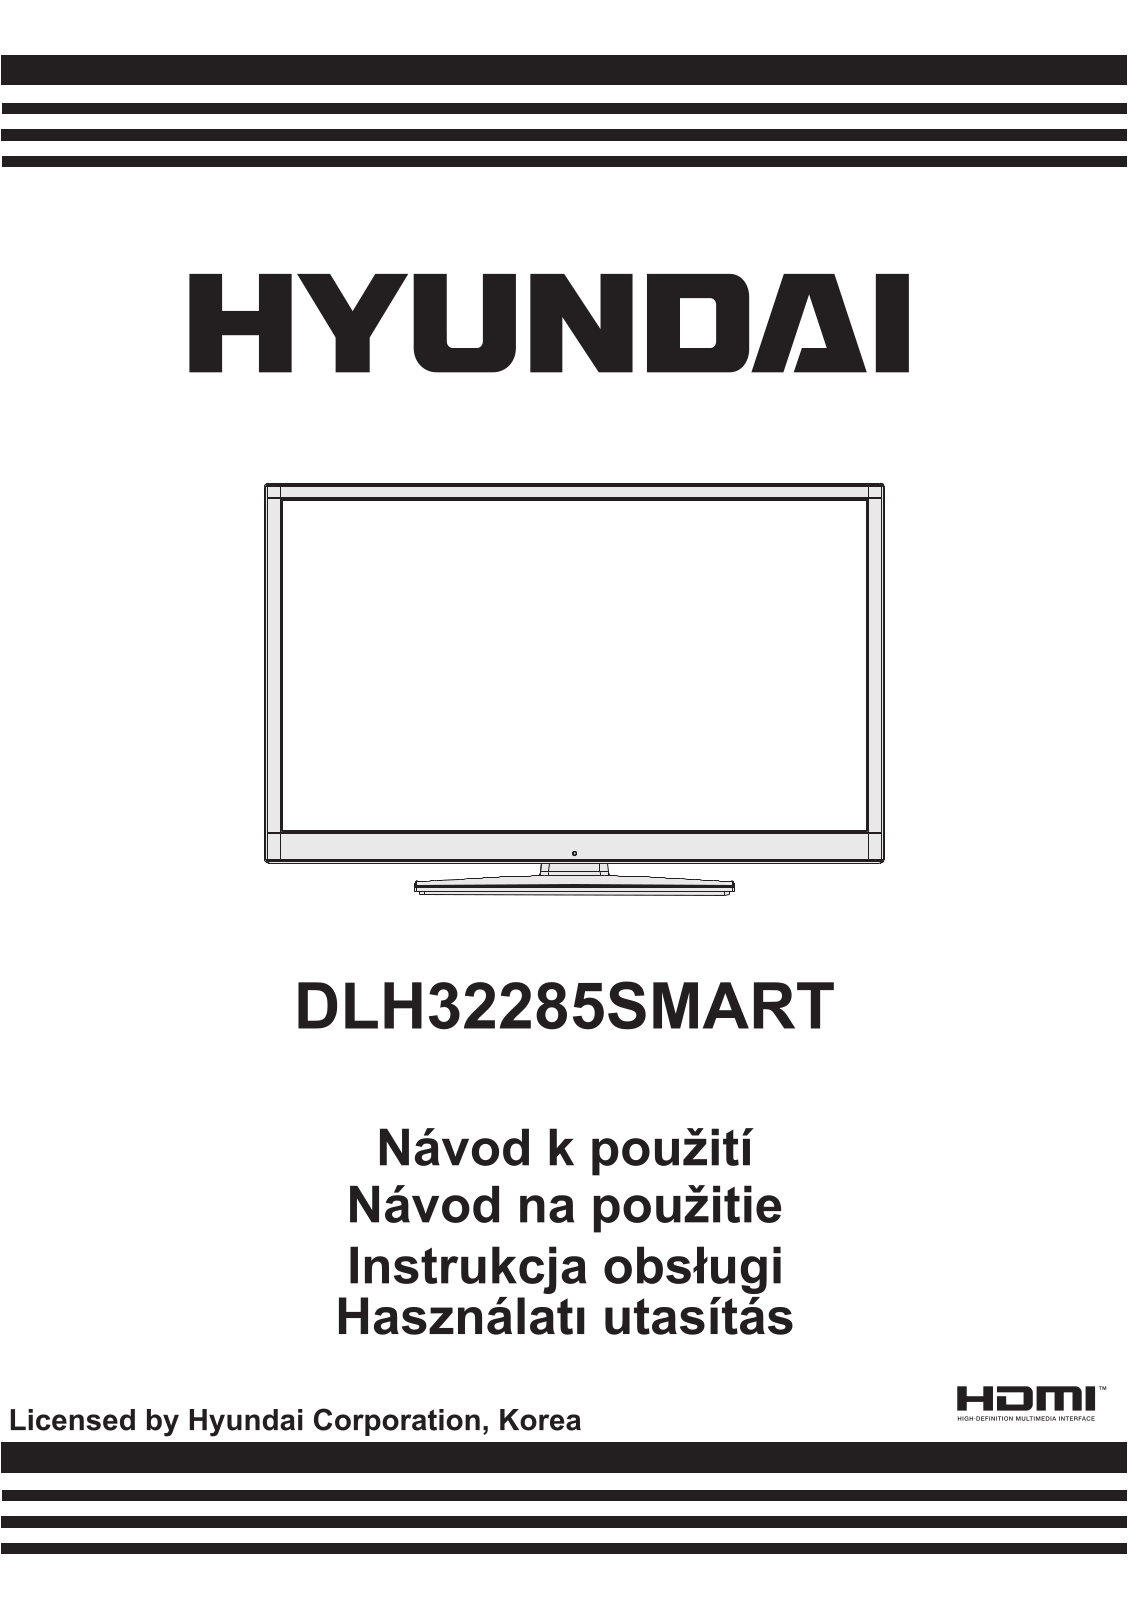 Hyundai DLH 32285 SMART User Manual